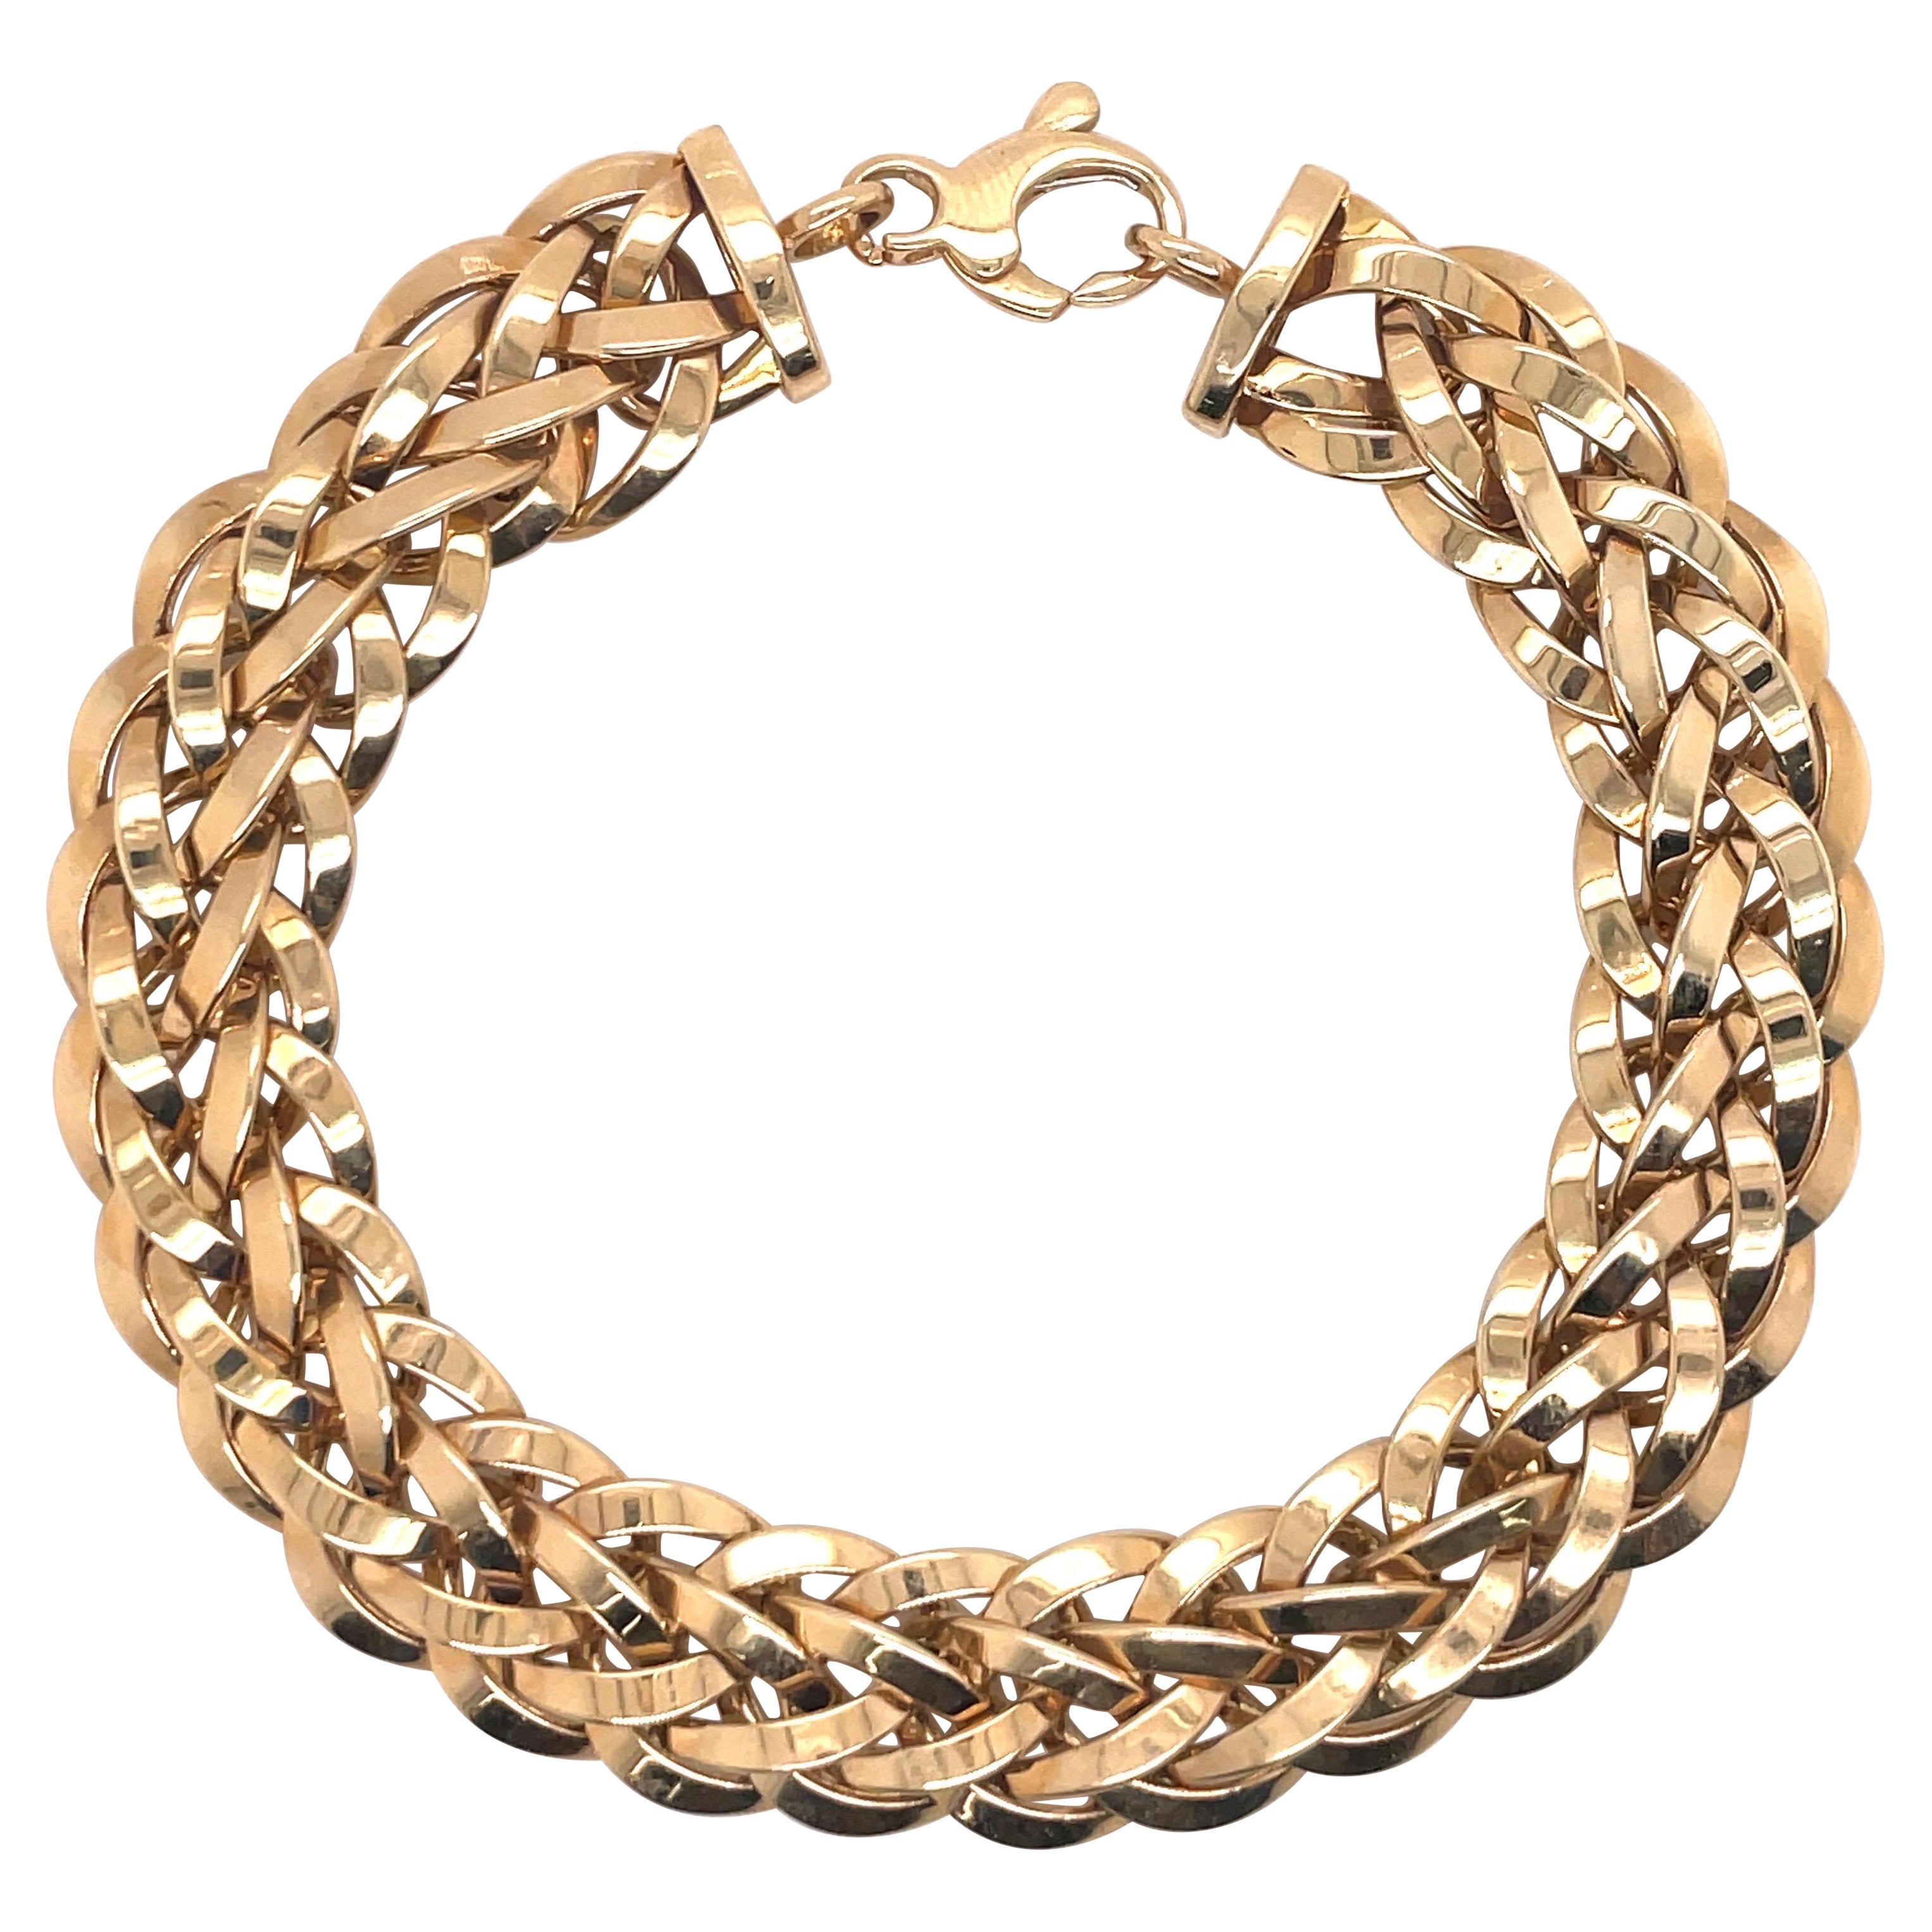 14 Karat Yellow Gold Interlocking Link Bracelet 12.8 Grams Made in Turkey